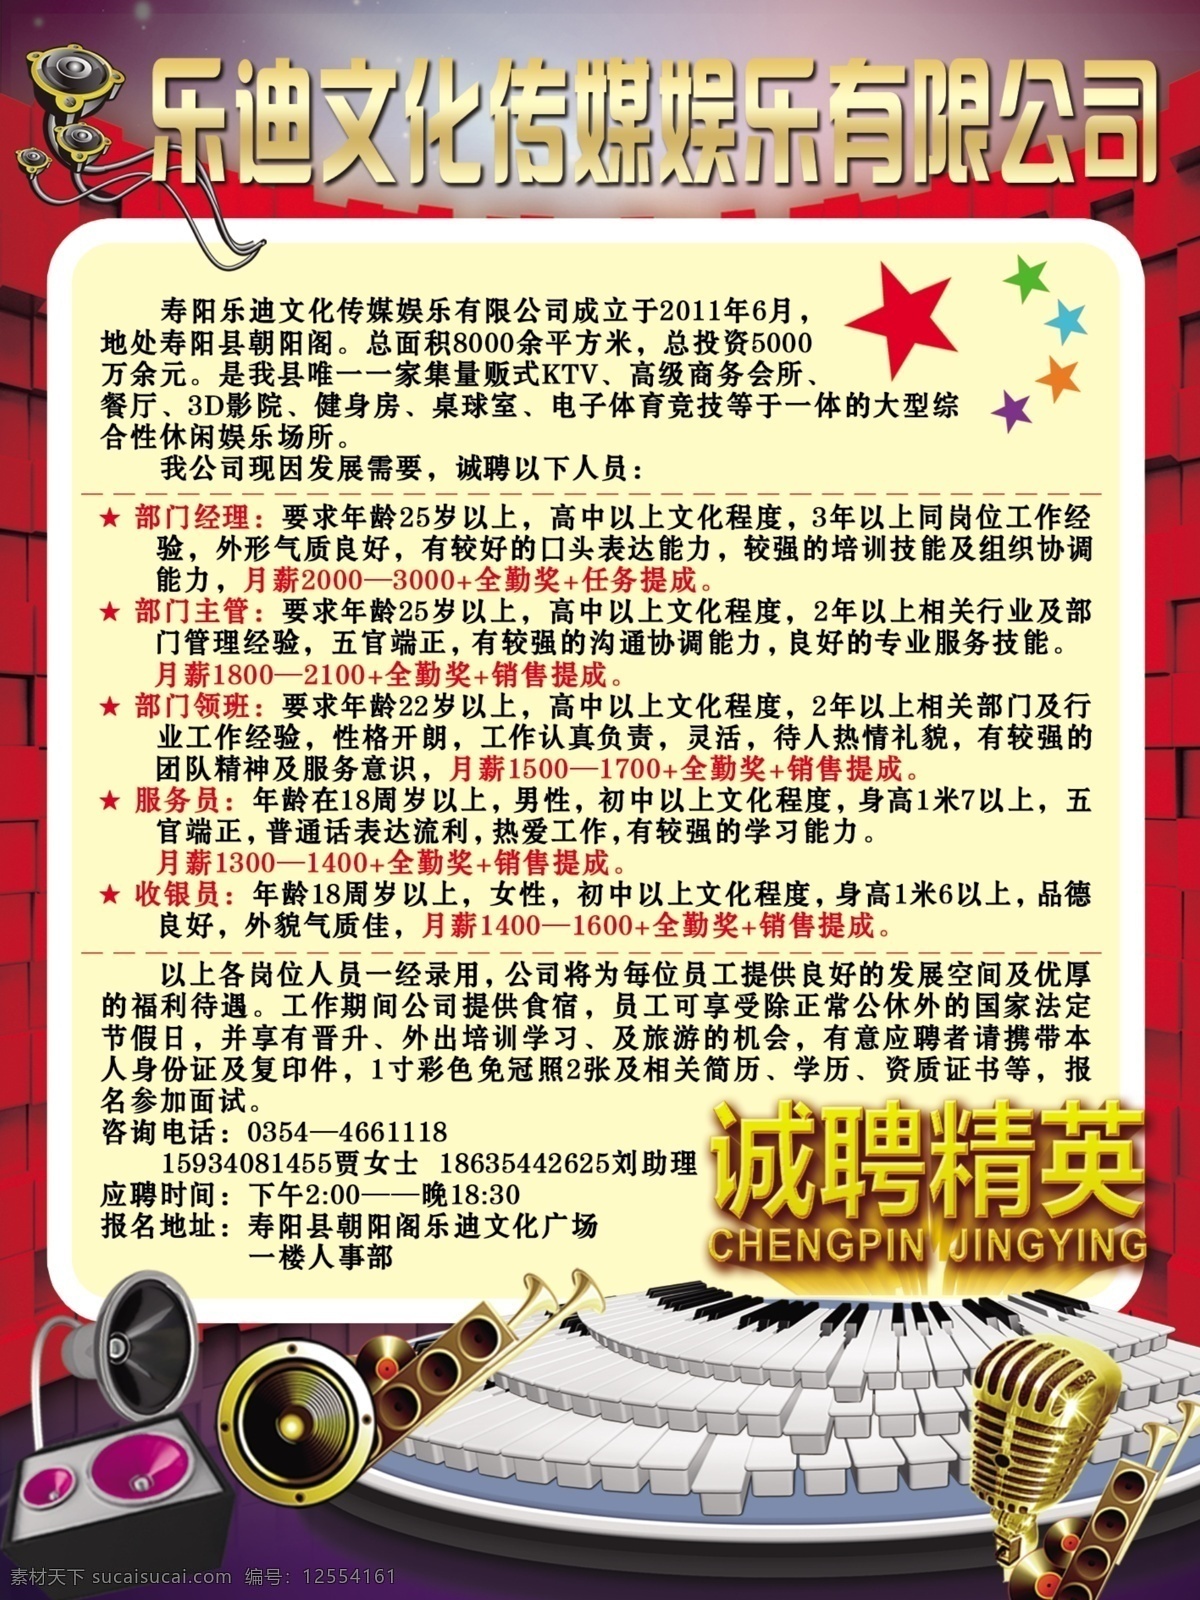 乐 迪 文化 传媒 招聘 海报 广告 红墙 星星 钢琴 诚聘精英 喇叭 麦克风 广告设计模板 源文件